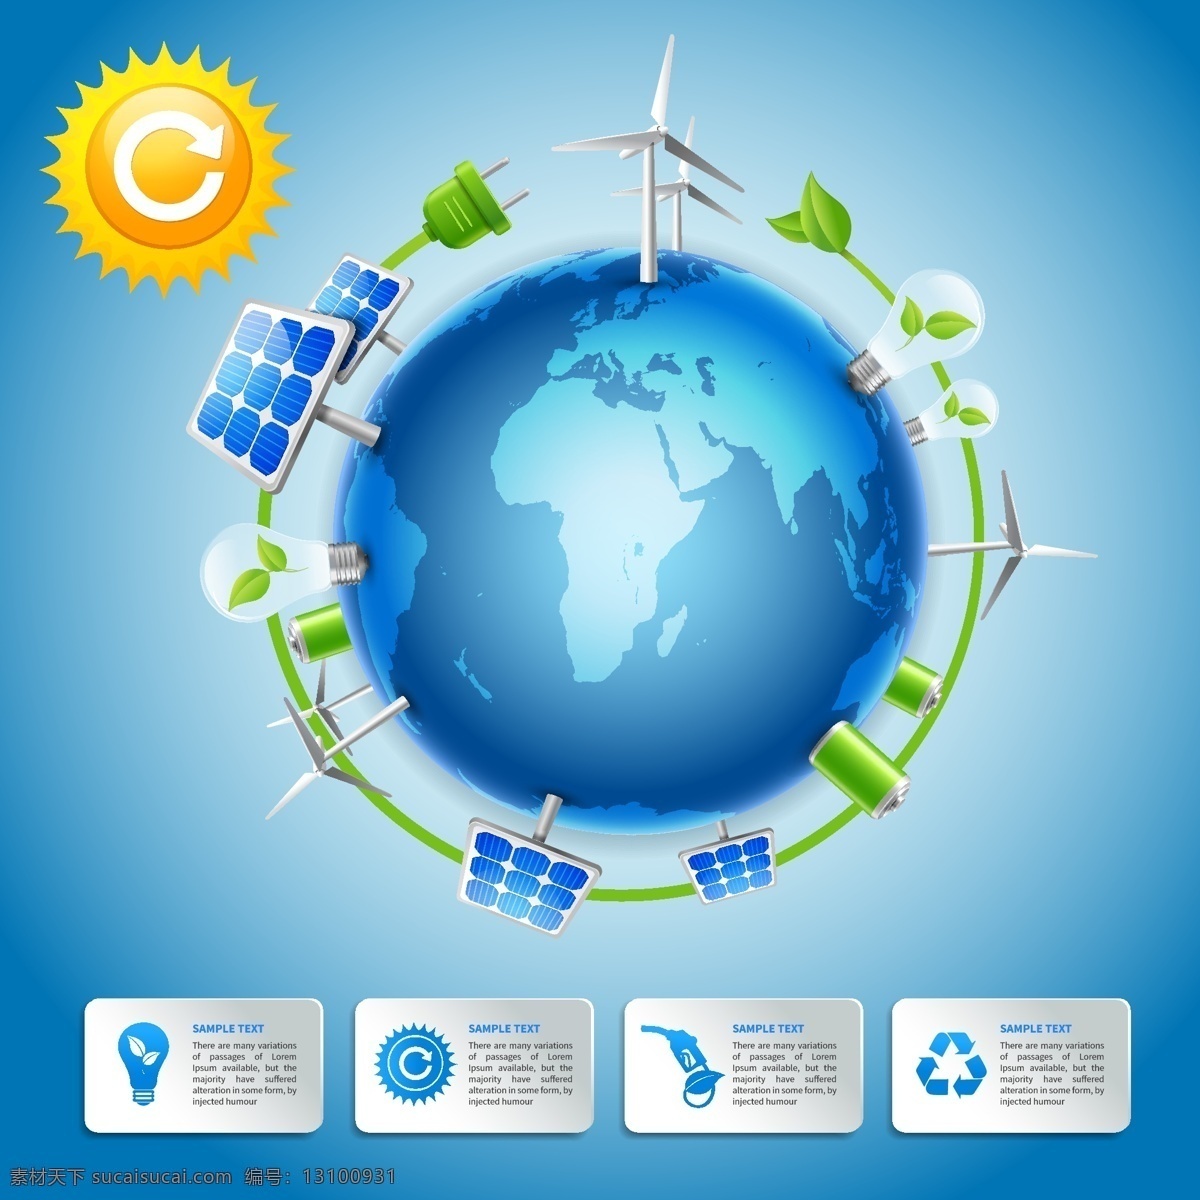 生态 环保 背景 eps格式 地球 风车 环境保护 绿色 能源 太阳 太阳能 信息图 创意 矢量 可循环 矢量图